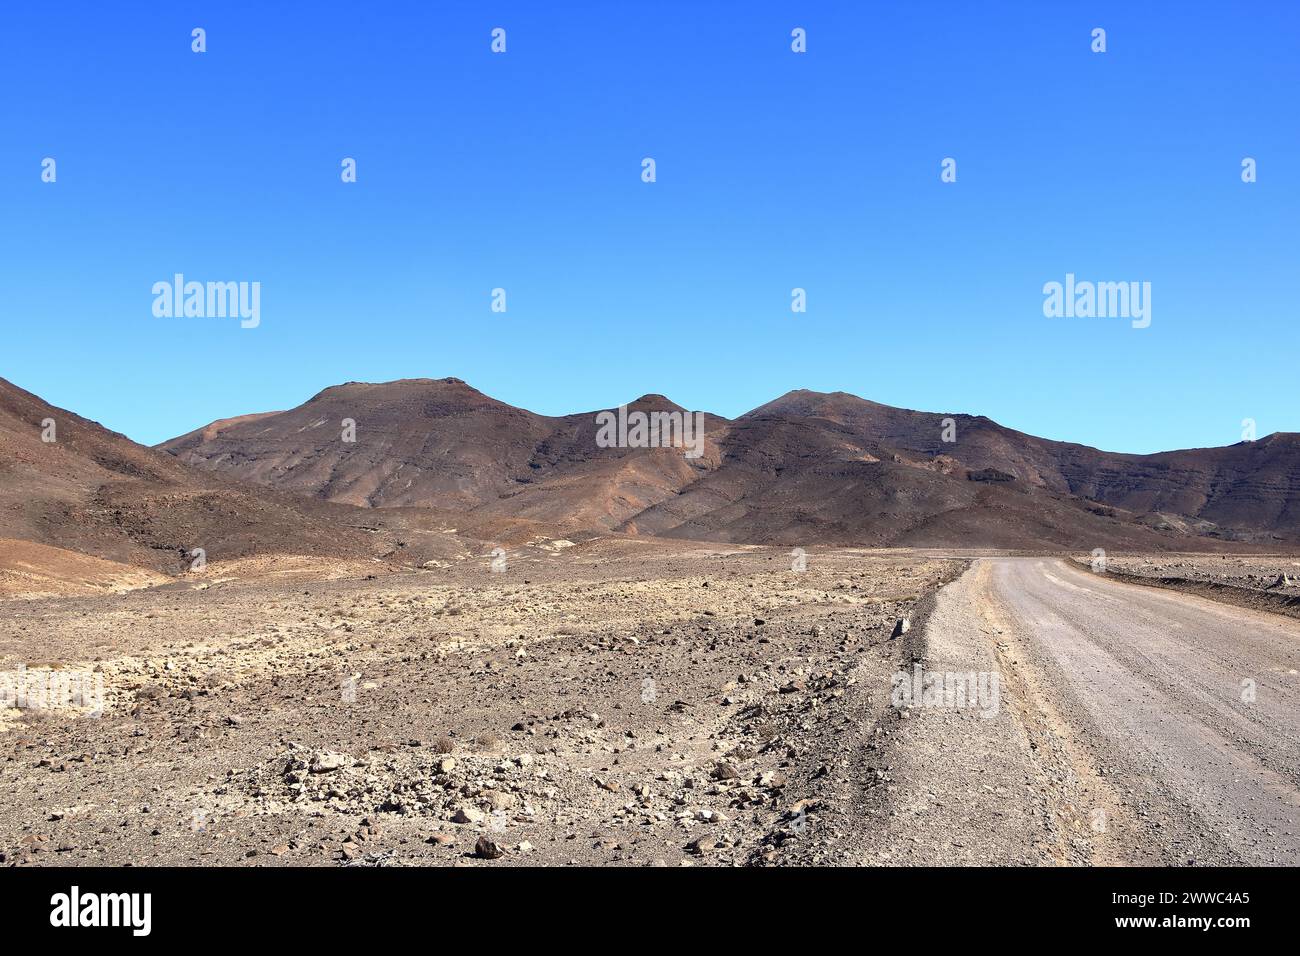 Grava, camino polvoriento con altas montañas volcánicas en el fondo. Jandia, Morro Jable, Fuerteventura, Islas Canarias en España Foto de stock